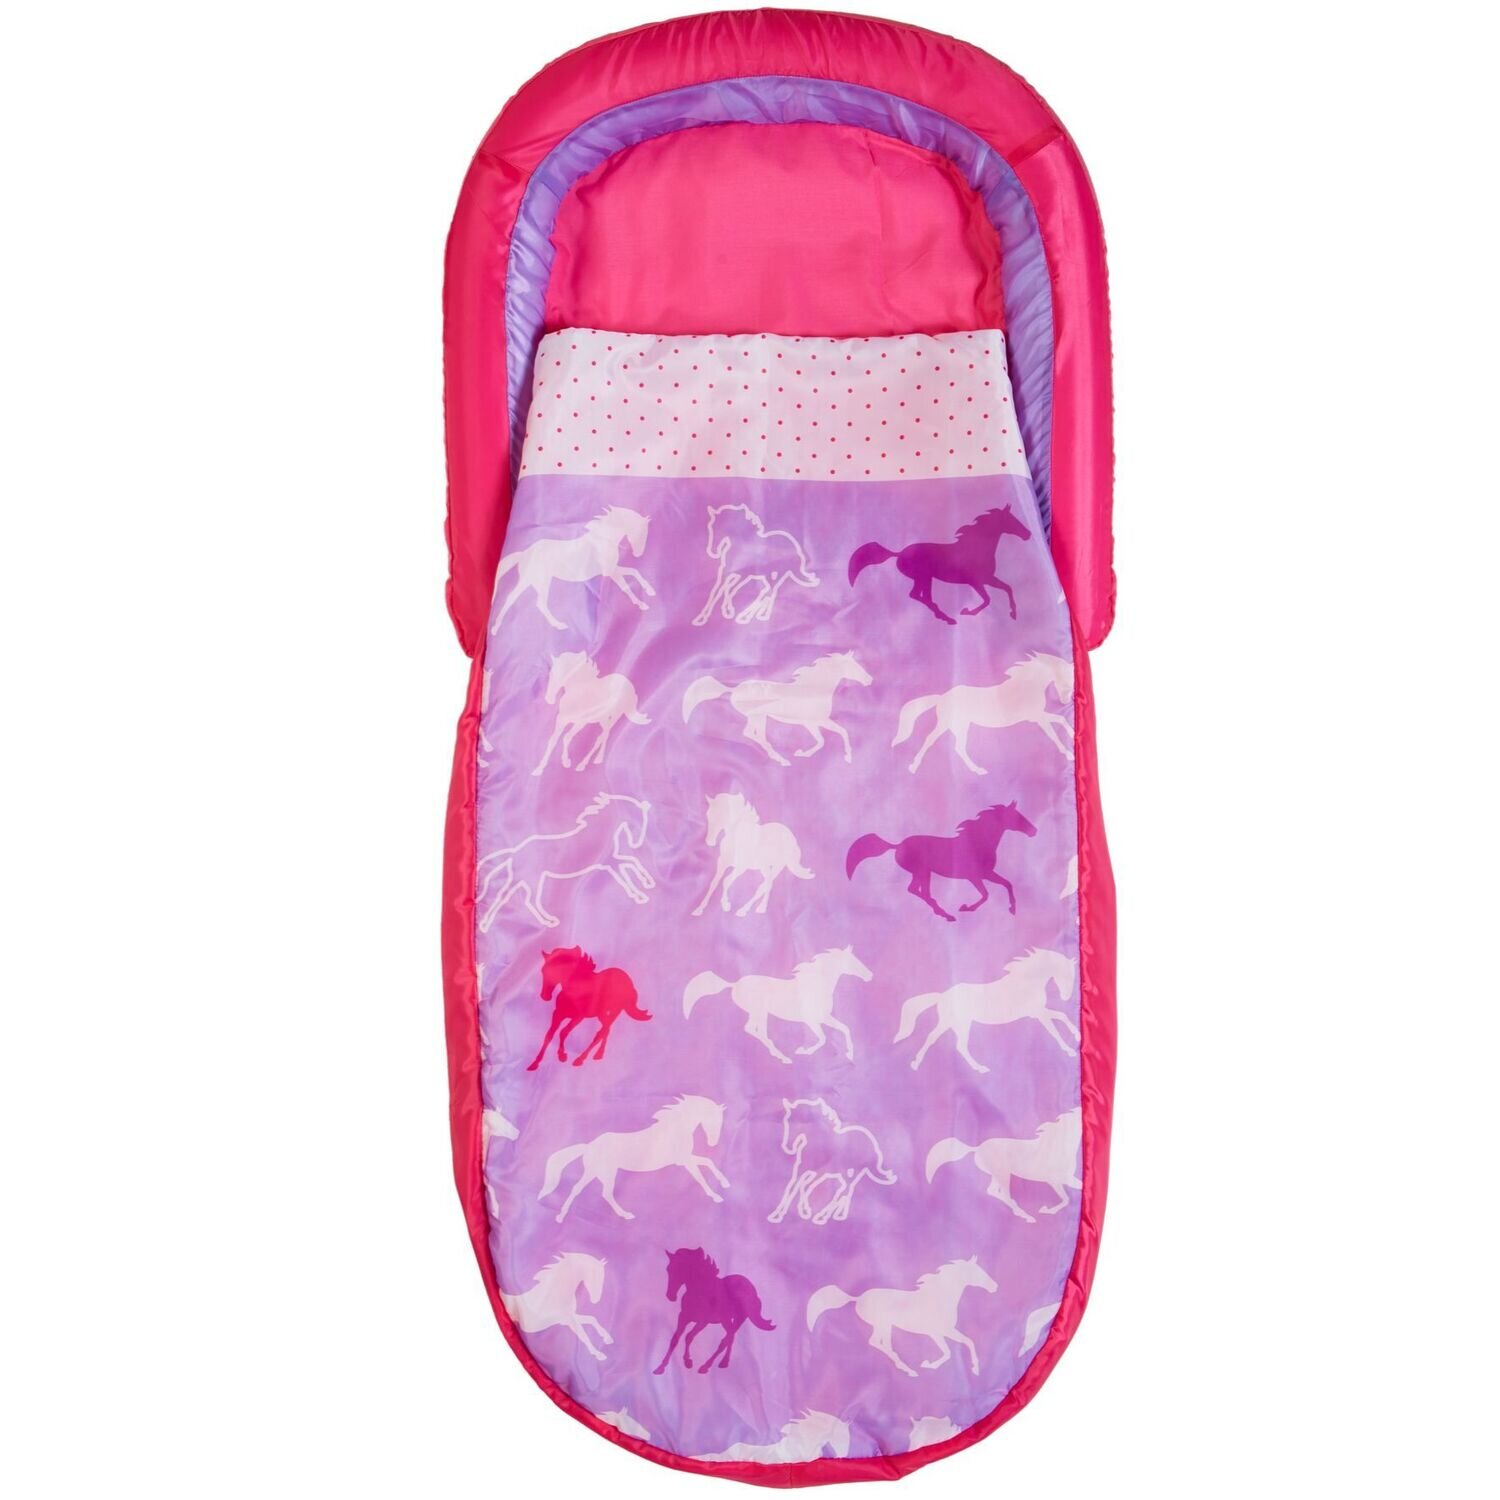 CHEVAUX - Mon premier lit d'appoint Readybed - Lit gonflable pour enfants avec sac de couchage intégré